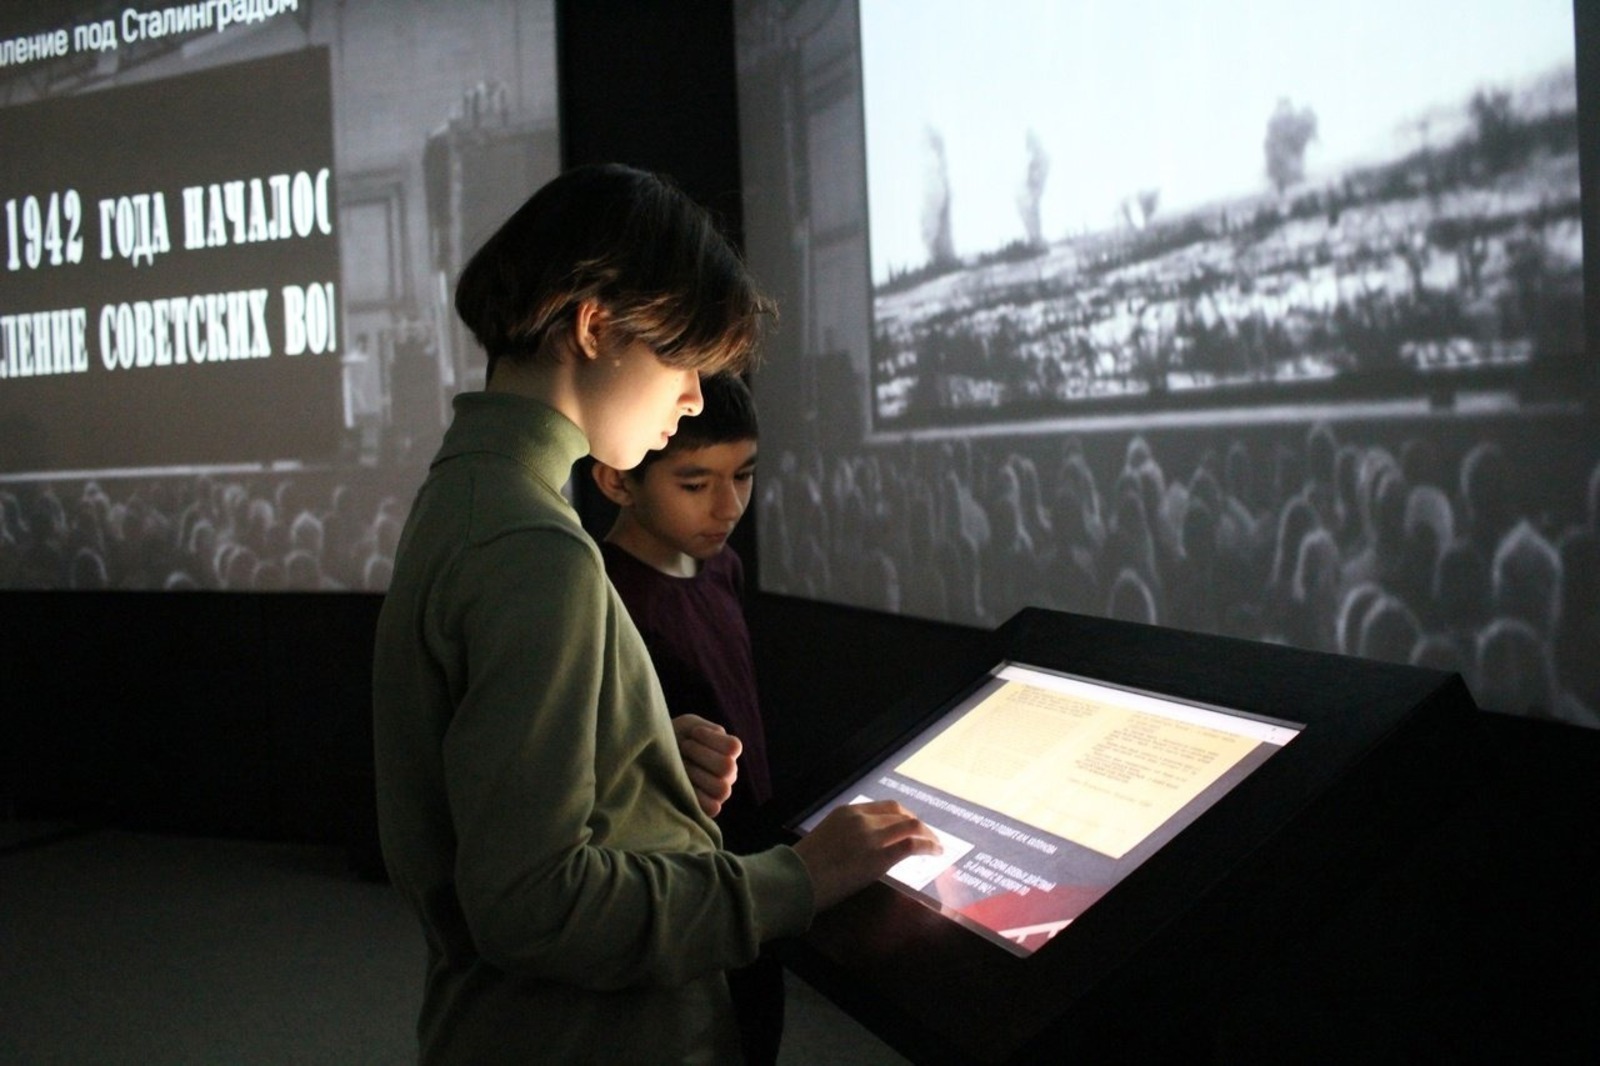 Сталинград һуғышының 80 йыллығына арналған мультимедиалы күргәҙмә асыла